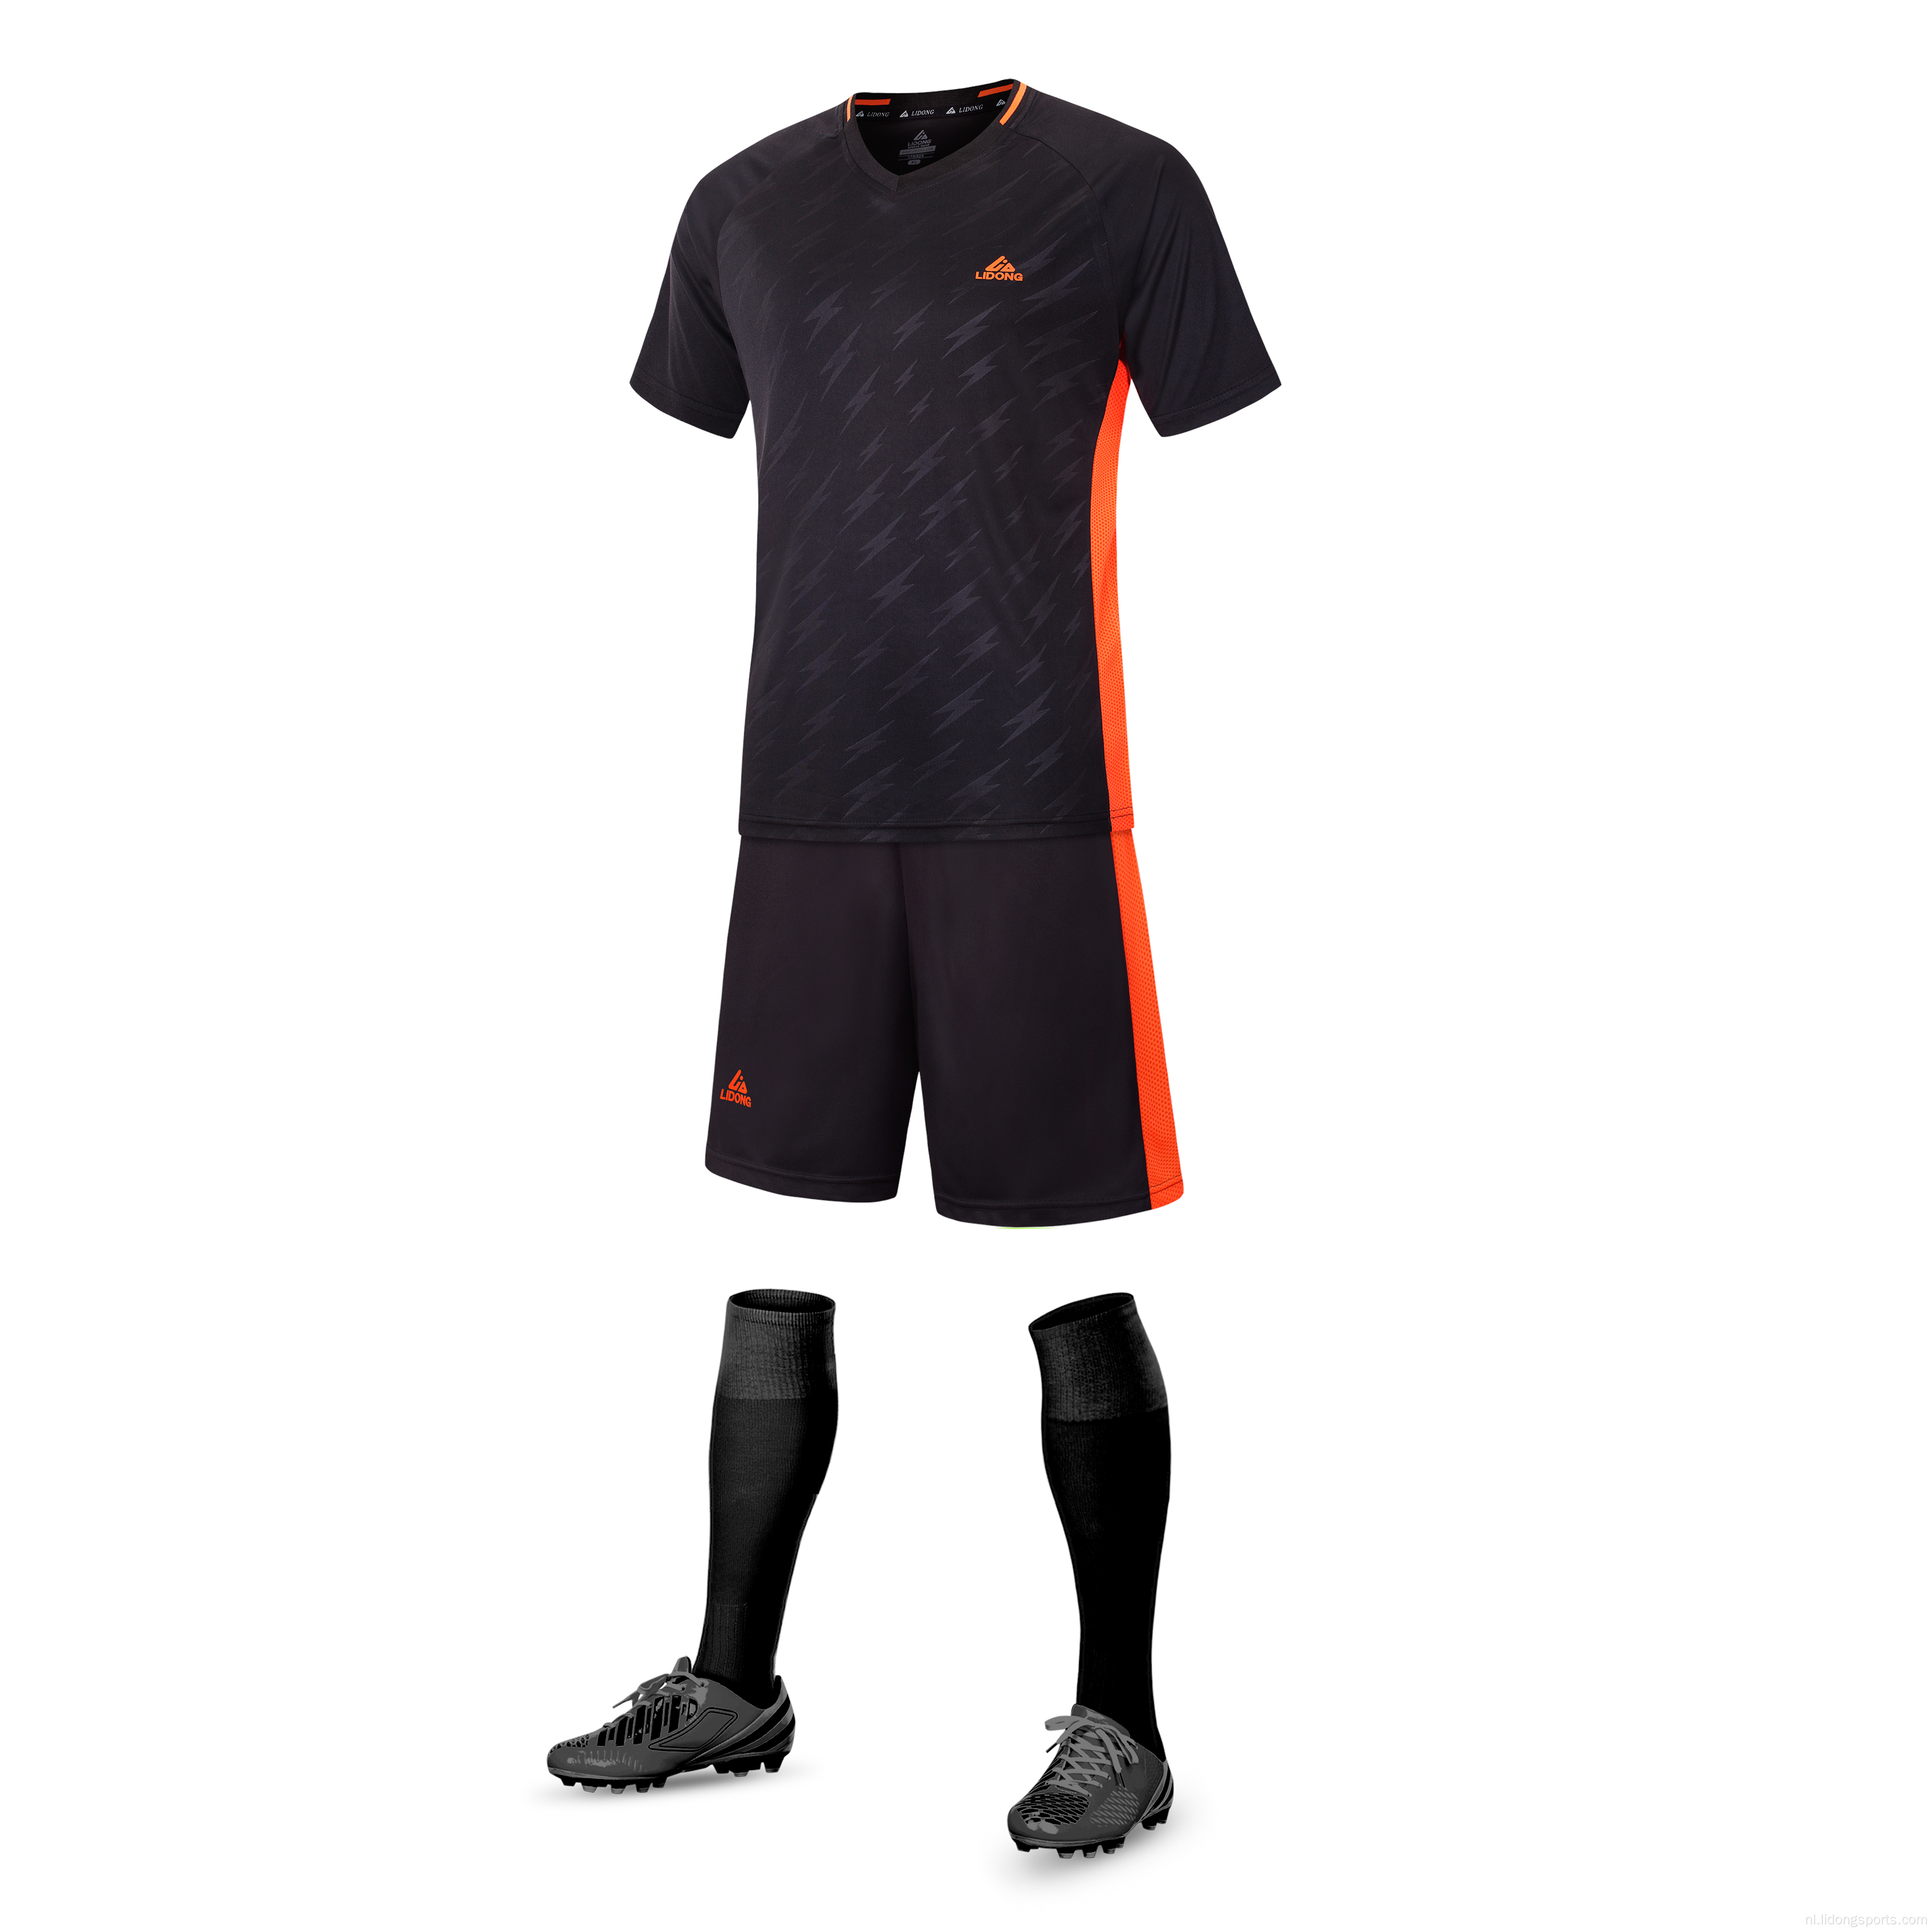 Nieuwe uniformen op maat gemaakte modevoetbaljersey